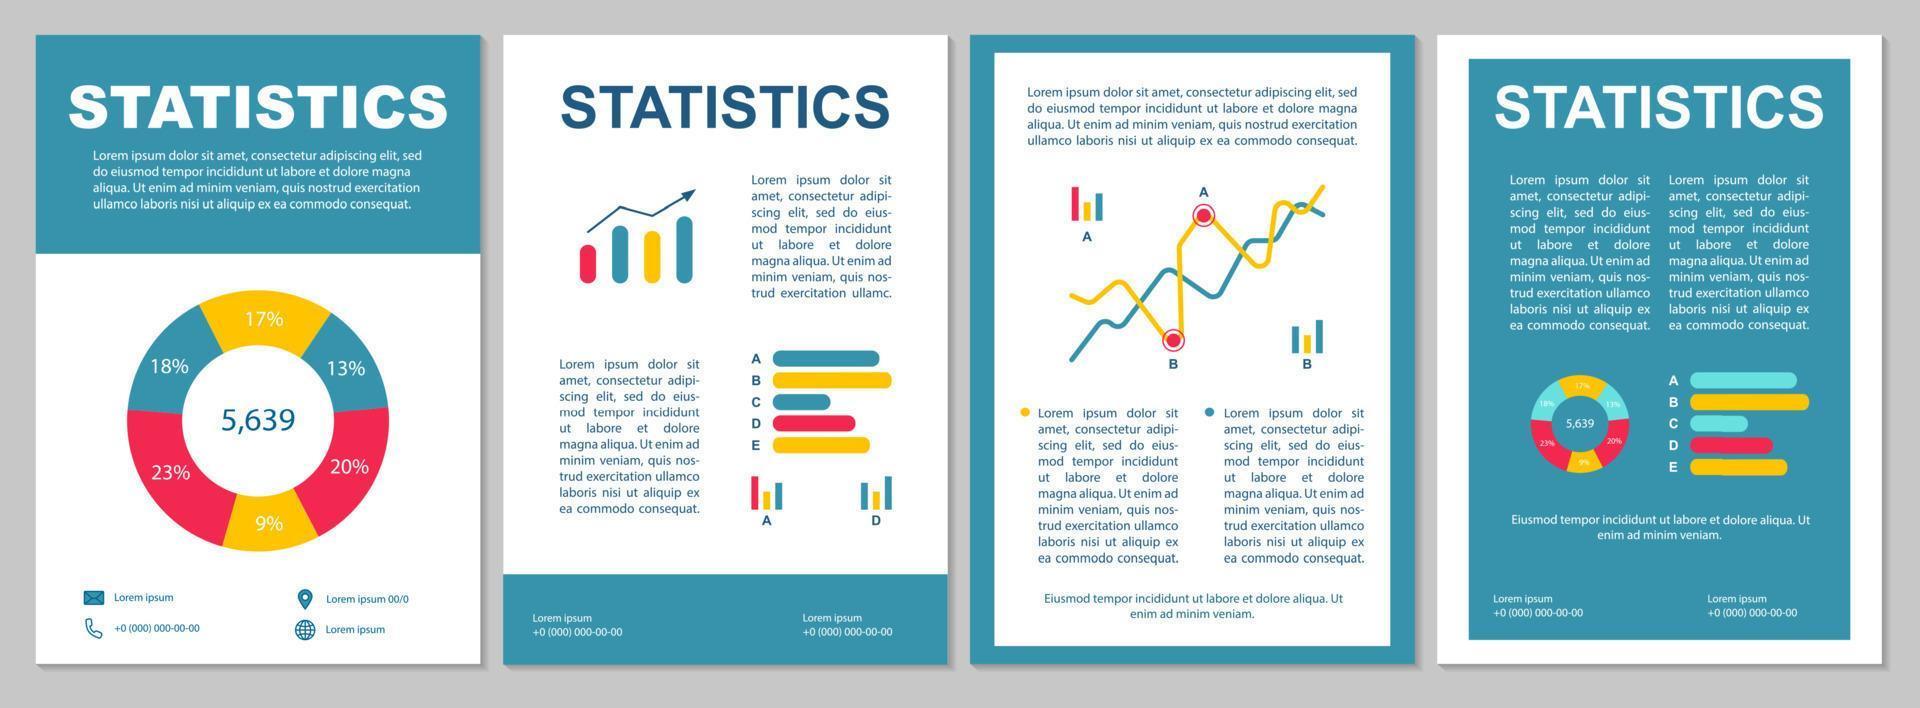 statistik broschyr mall layout. dataanalys. flygblad, häfte, broschyr tryck design. mätvärden och analyser. FINANSIERINGSÖVERSIKT. vektor sidlayouter för tidskrifter, rapporter, reklamaffischer